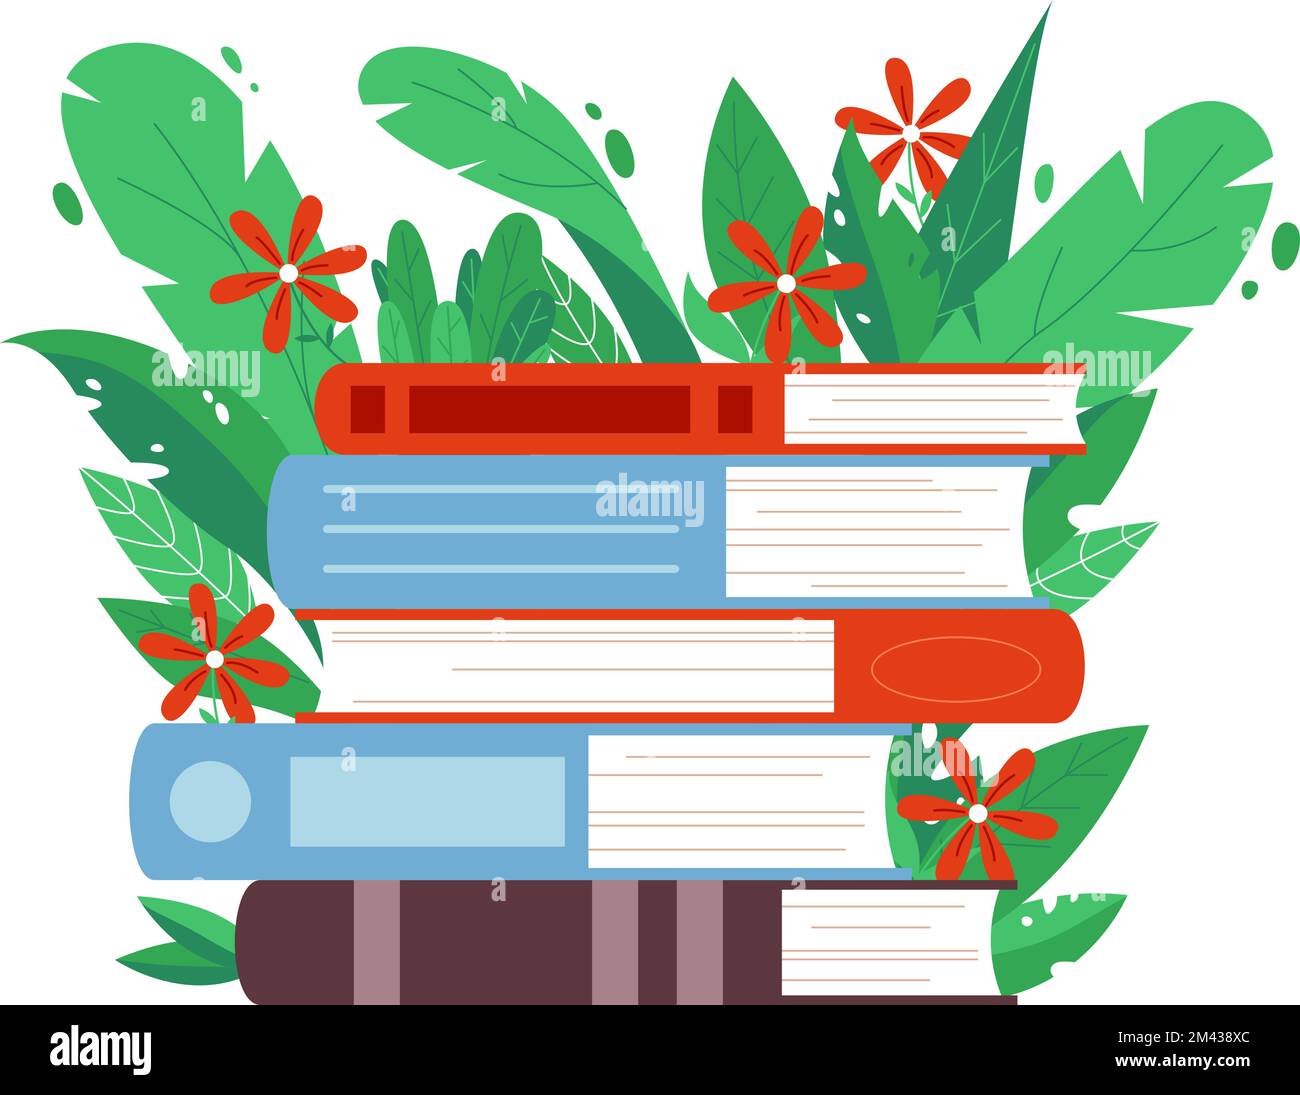 Zeichentrickbücher stapeln sich. Buchen Sie grüne Blätter und Blumen. Bibliothek, Buchhandlung oder Bildungsvektorkonzept. Selbststudienliteratur, lesen Stock Vektor